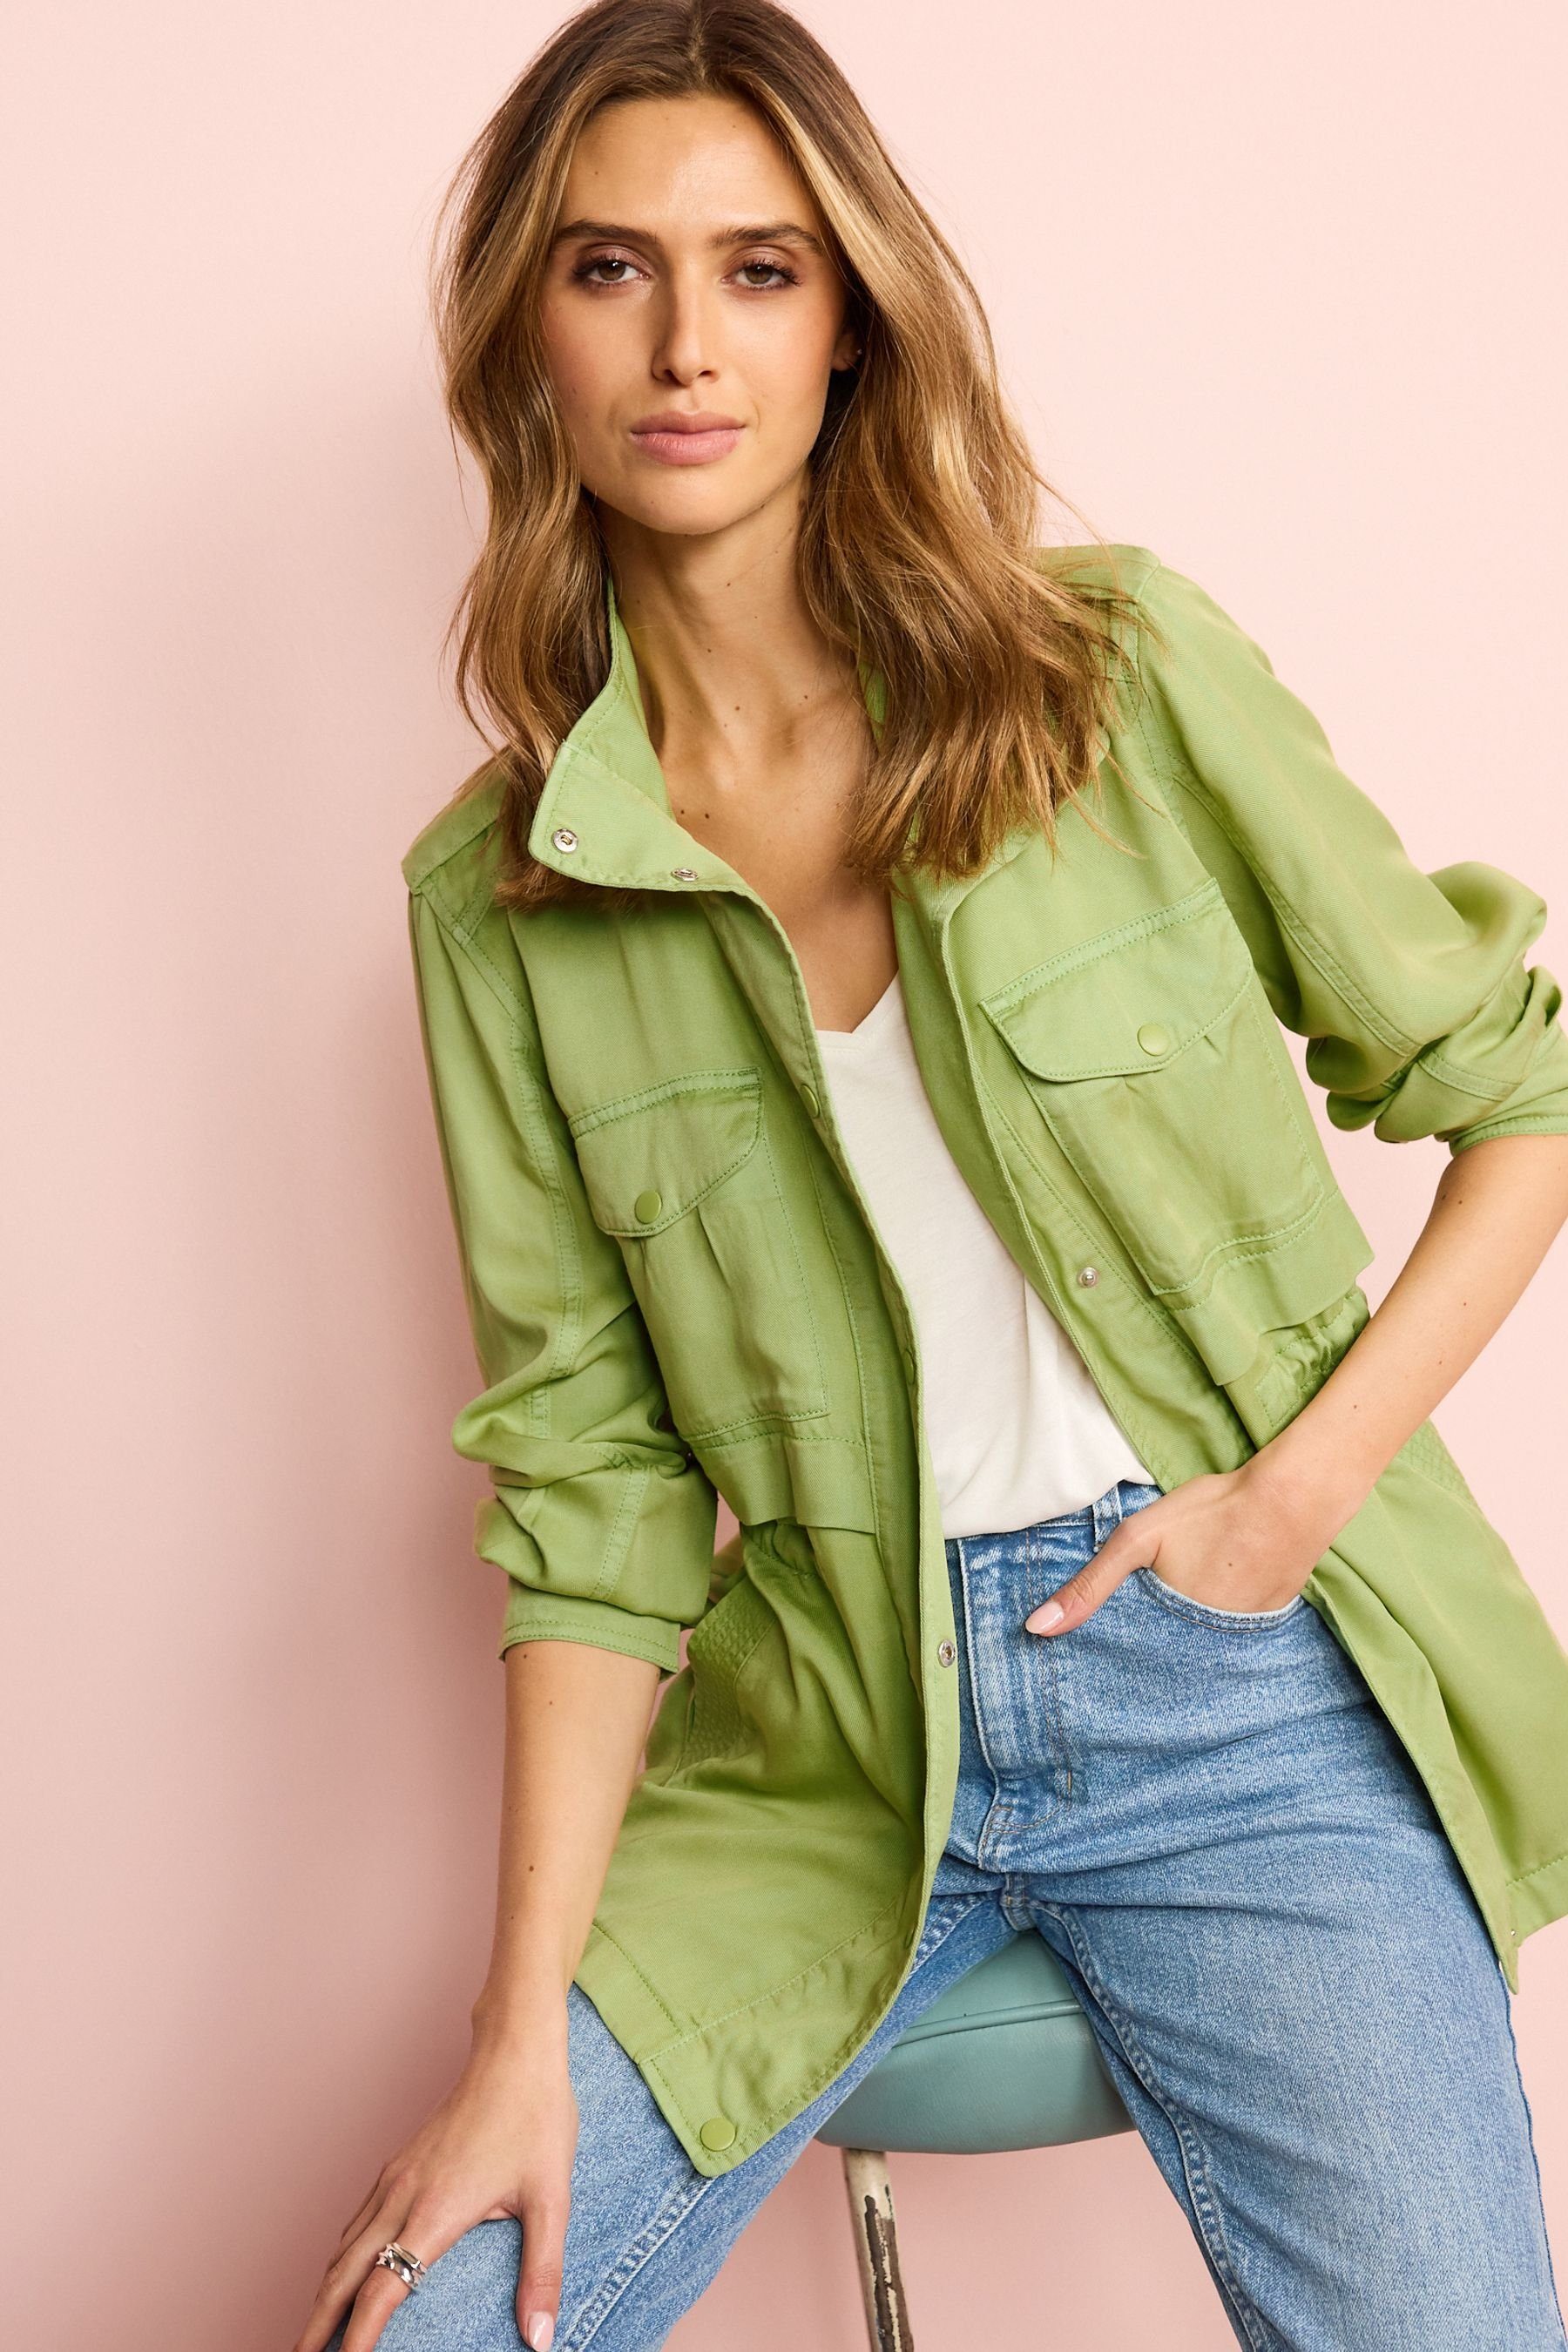 Relaxed (1-St) Green aufgesetzten Sommerjacke Taschen Next Fit mit Khaki Utility-Jacke Soft